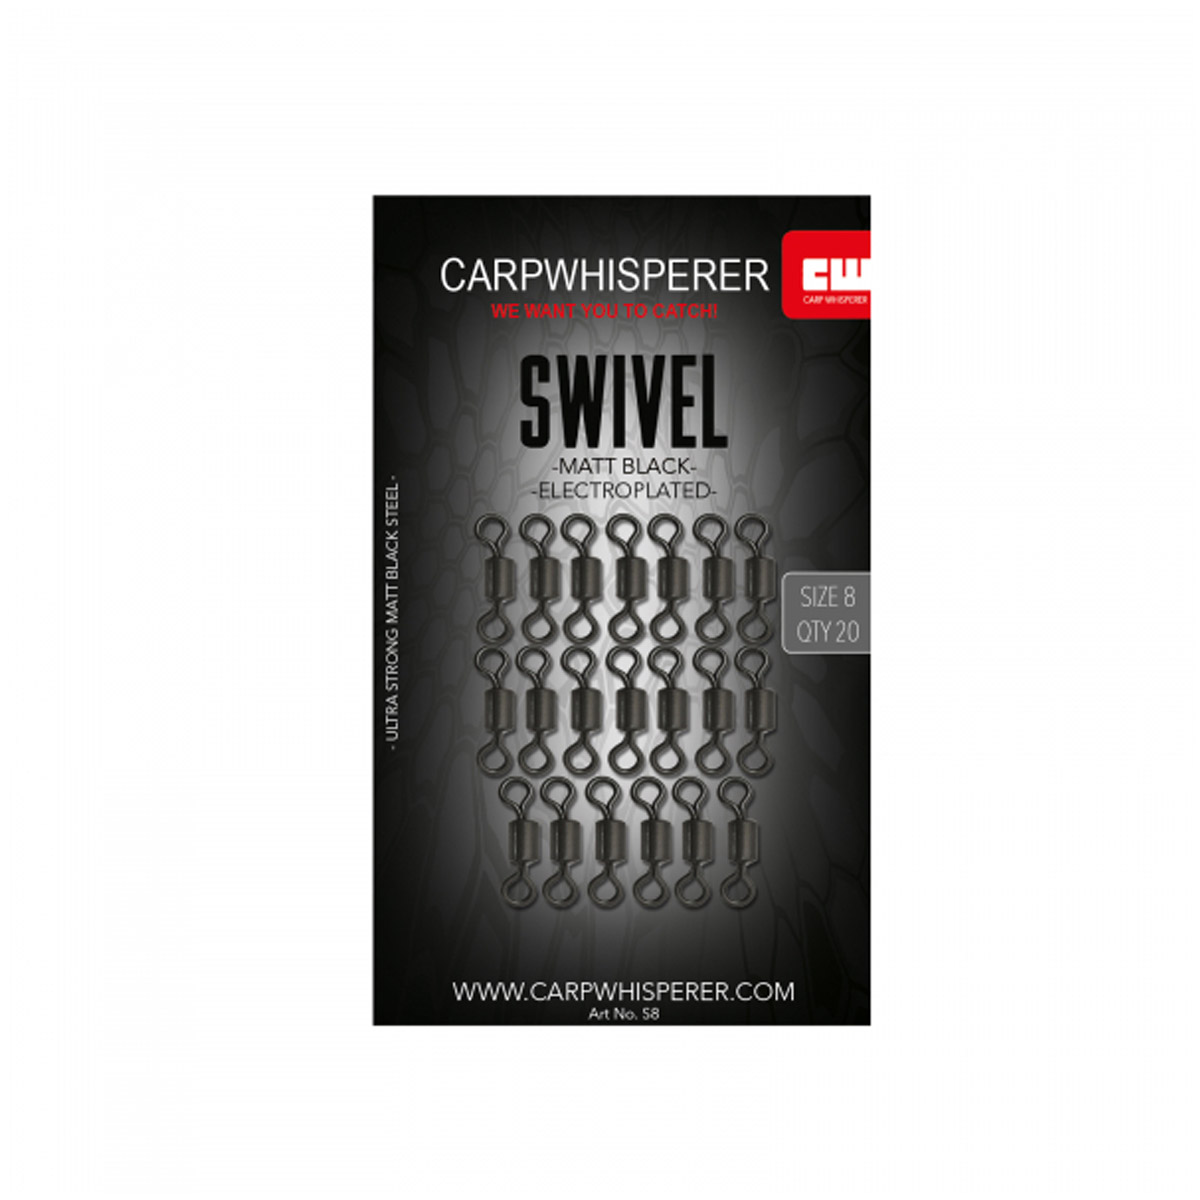 Carp Whisperer - Swivel Size 8